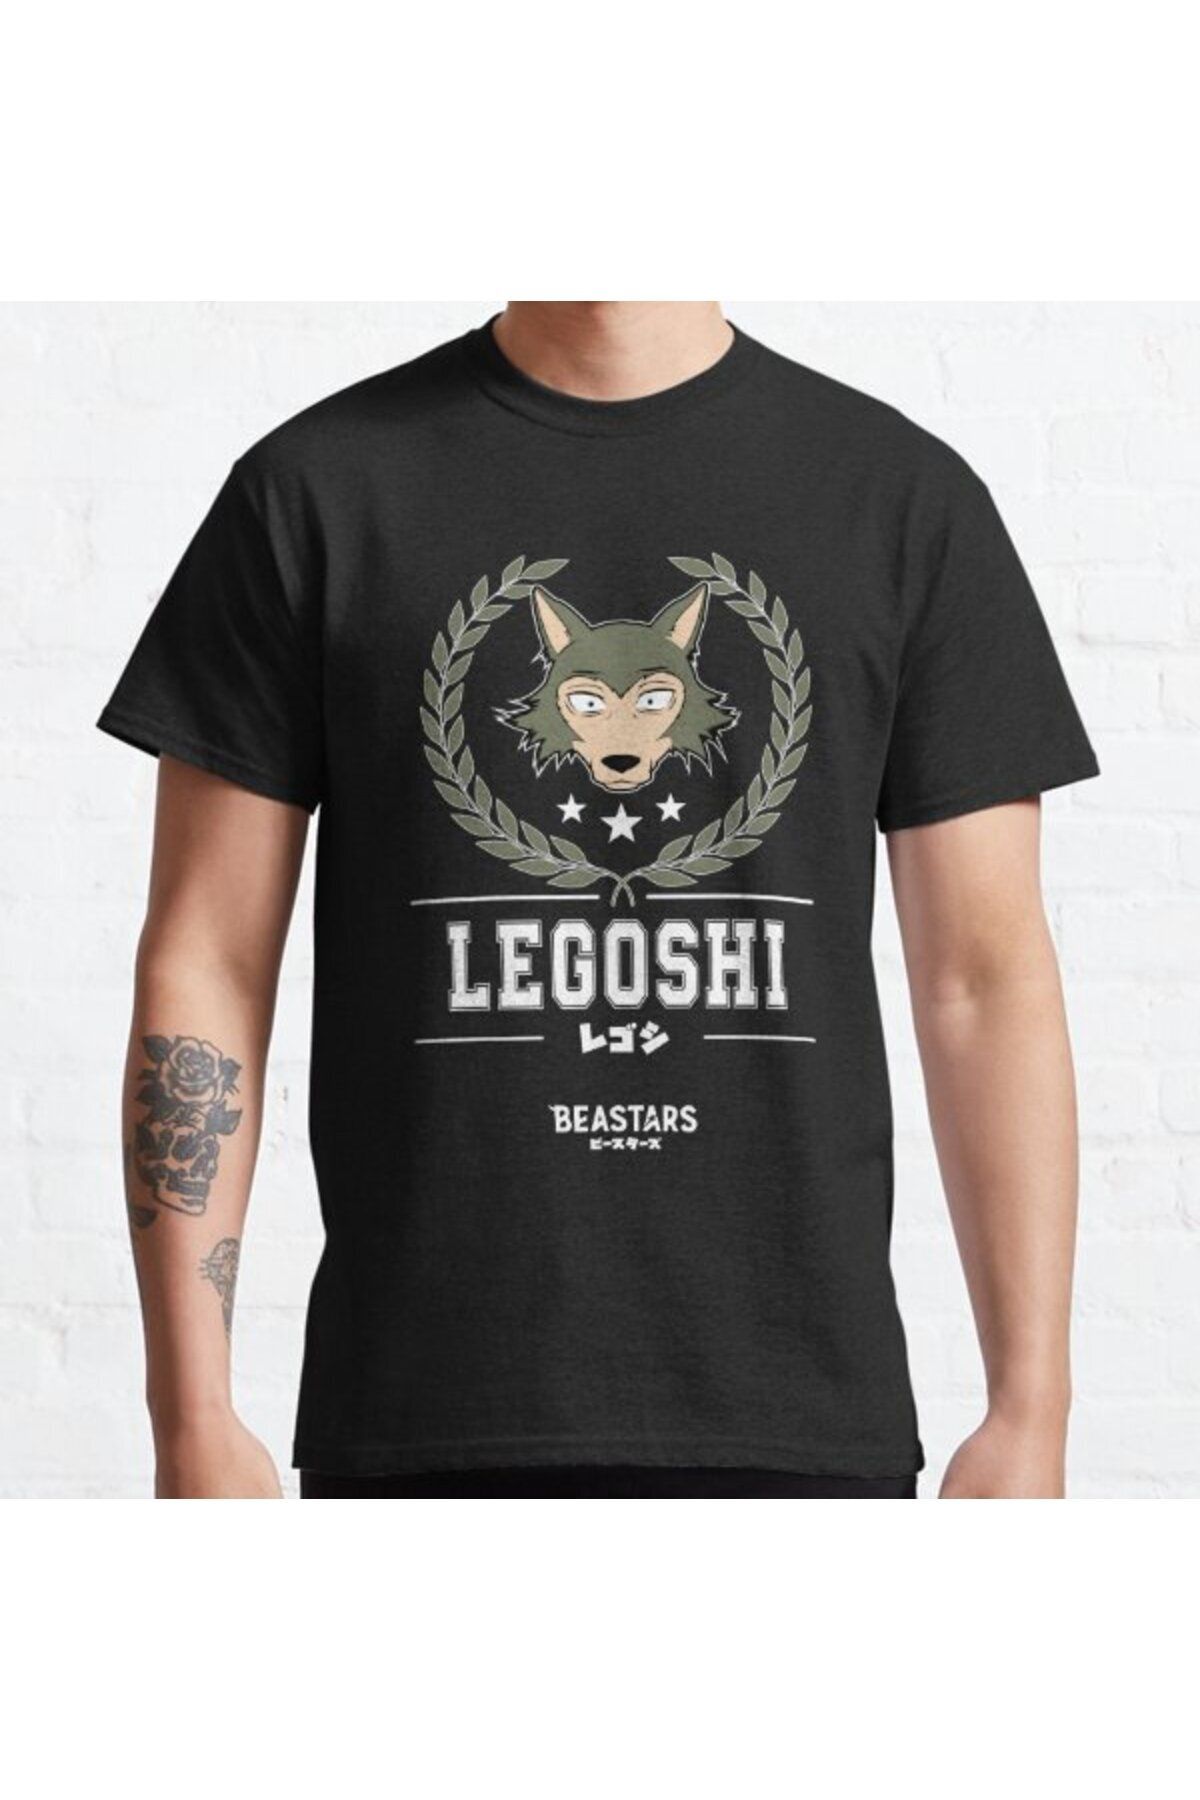 ZOKAWEAR Bol Kalıp Beastars: Team Legoshi Tasarım Baskılı T-shirt